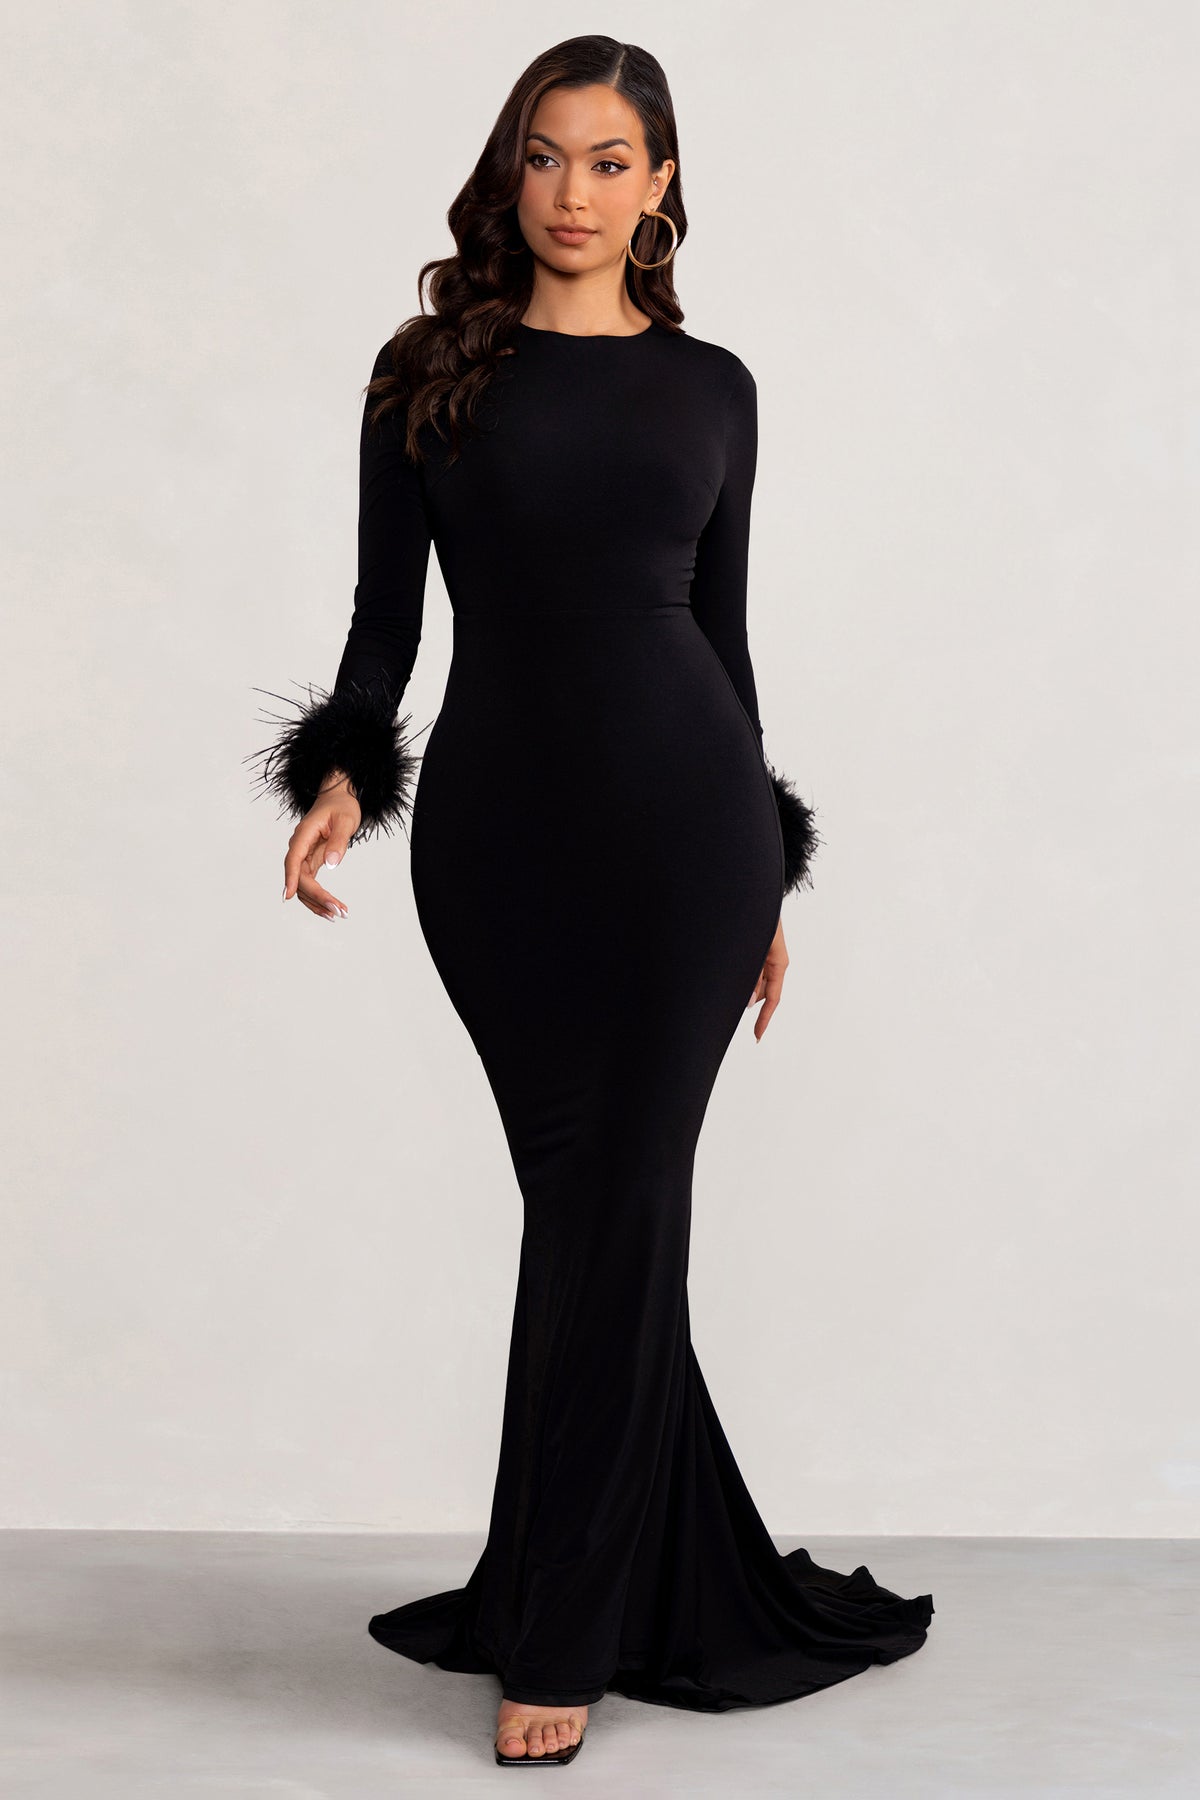  Black Full Length Dress